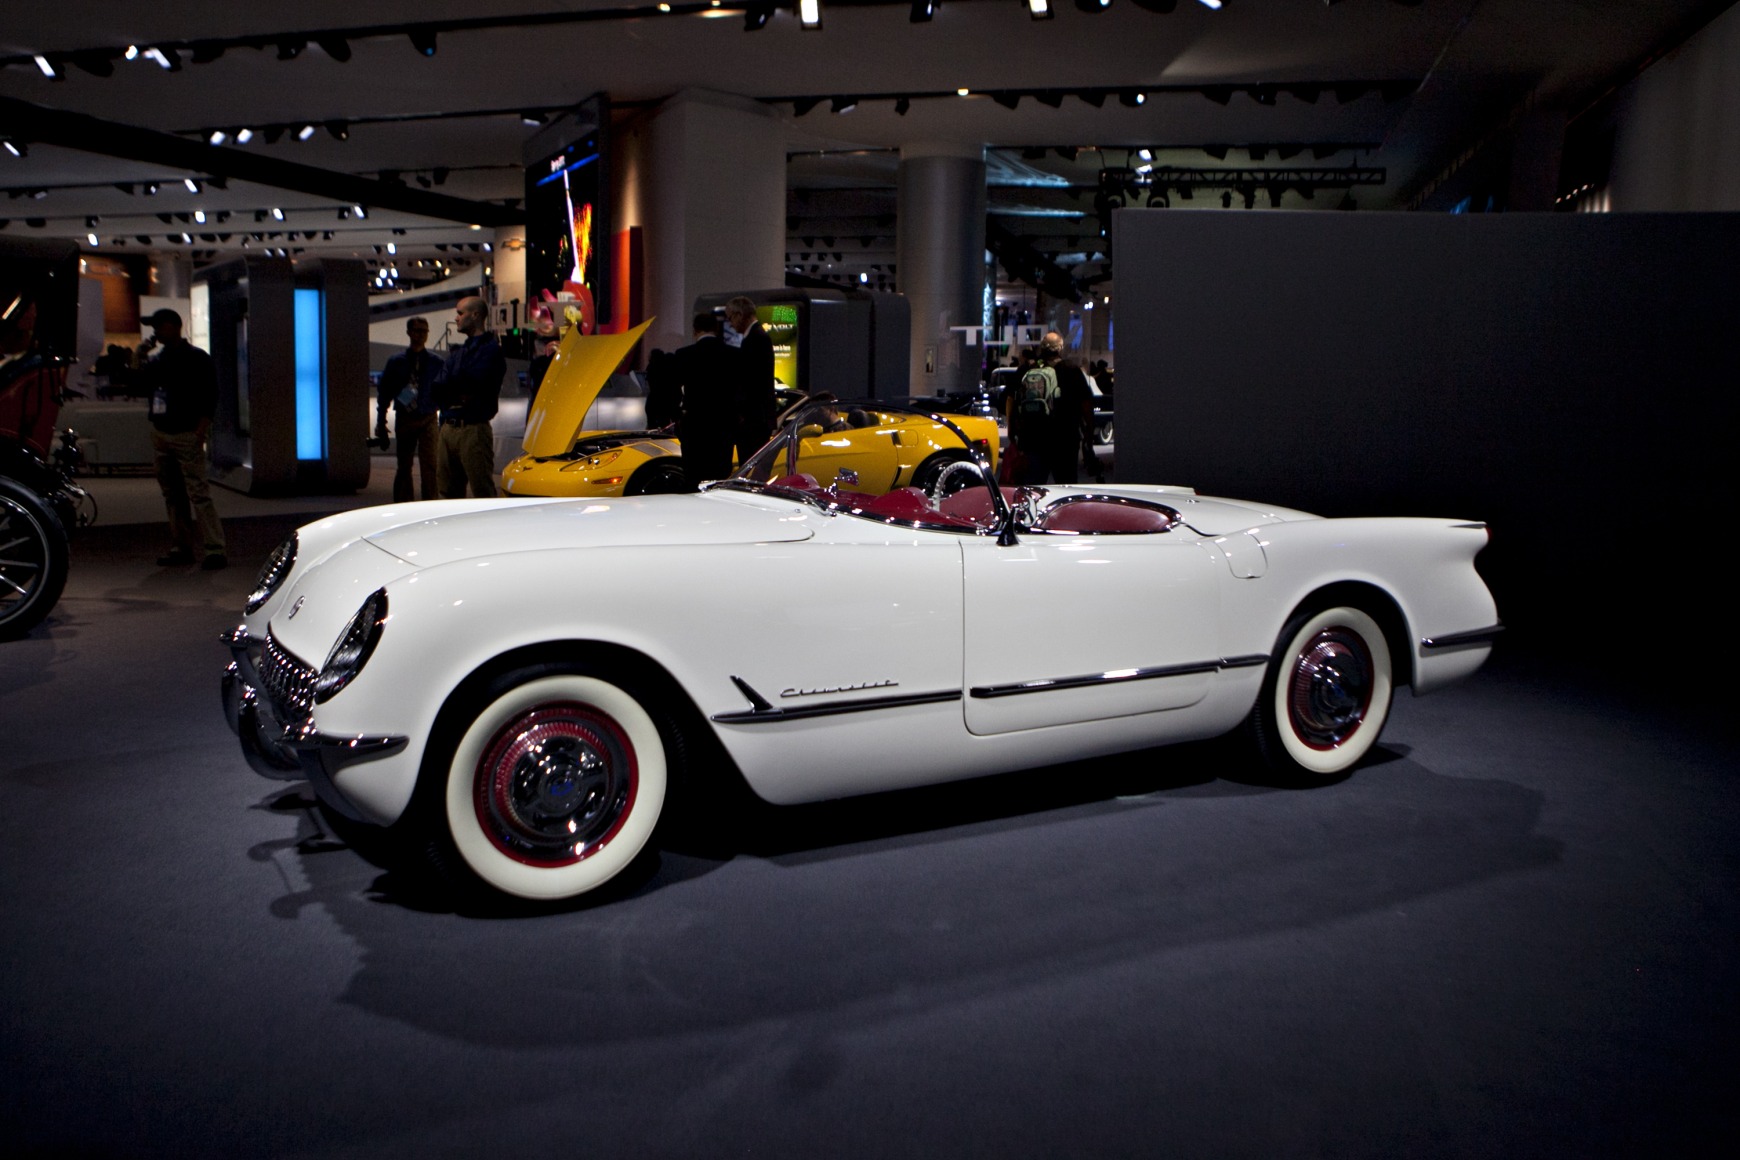 The Corvette: A Sometimes Sensational, Sometimes Sloppy History - Bloomberg